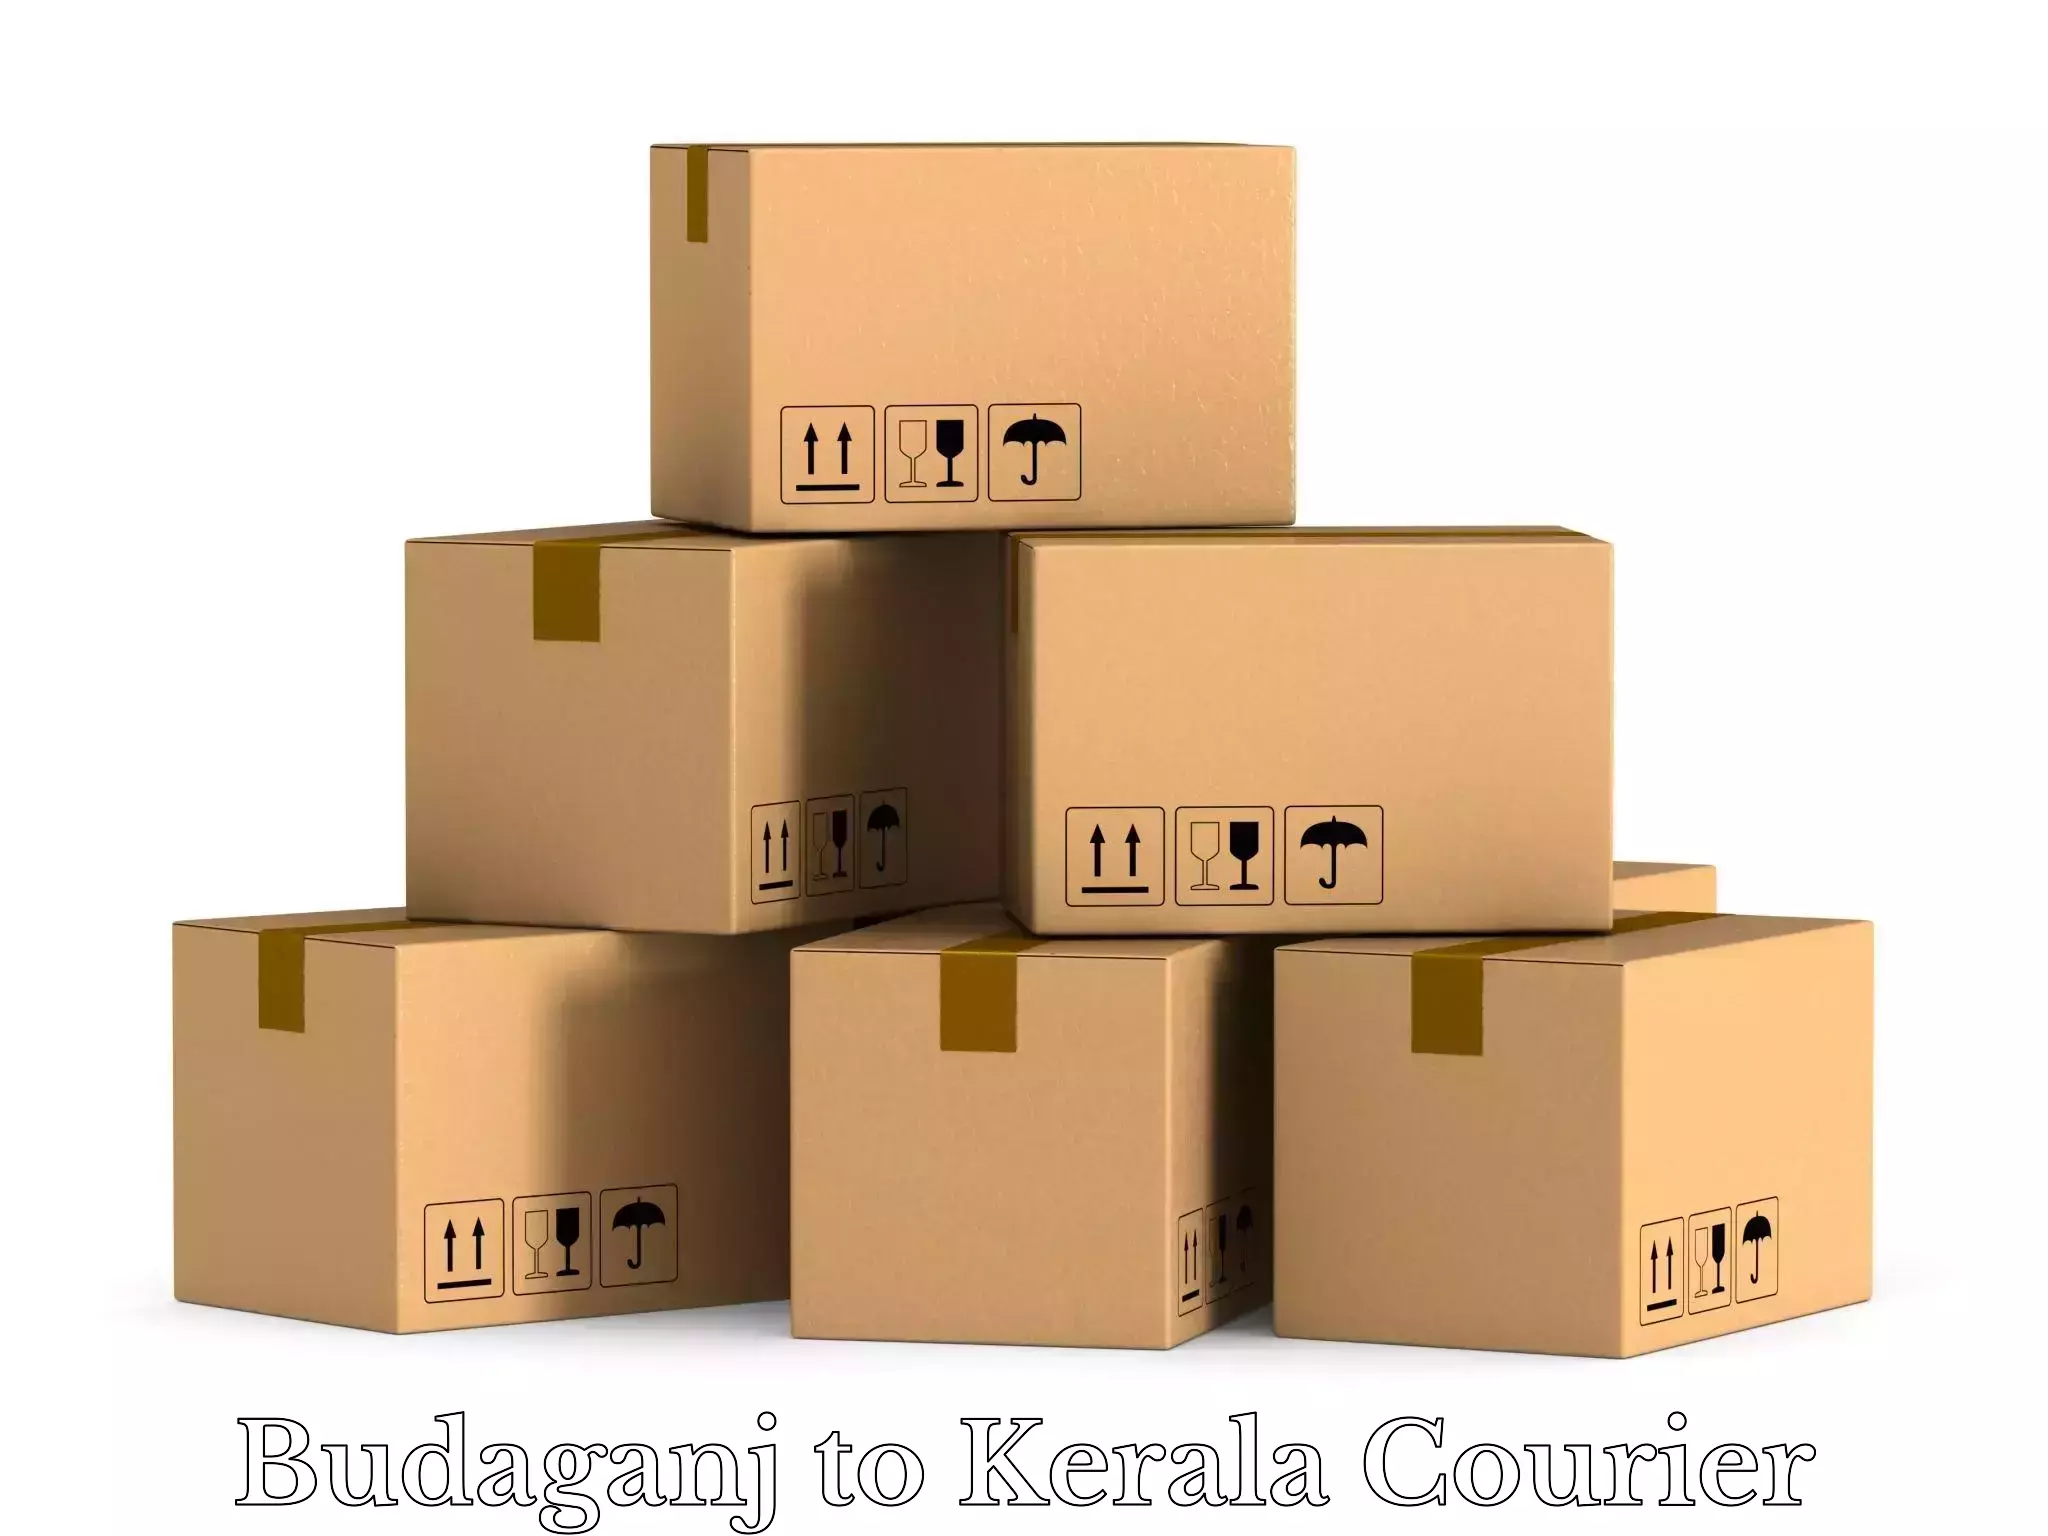 Express luggage delivery Budaganj to IIIT Kottayam